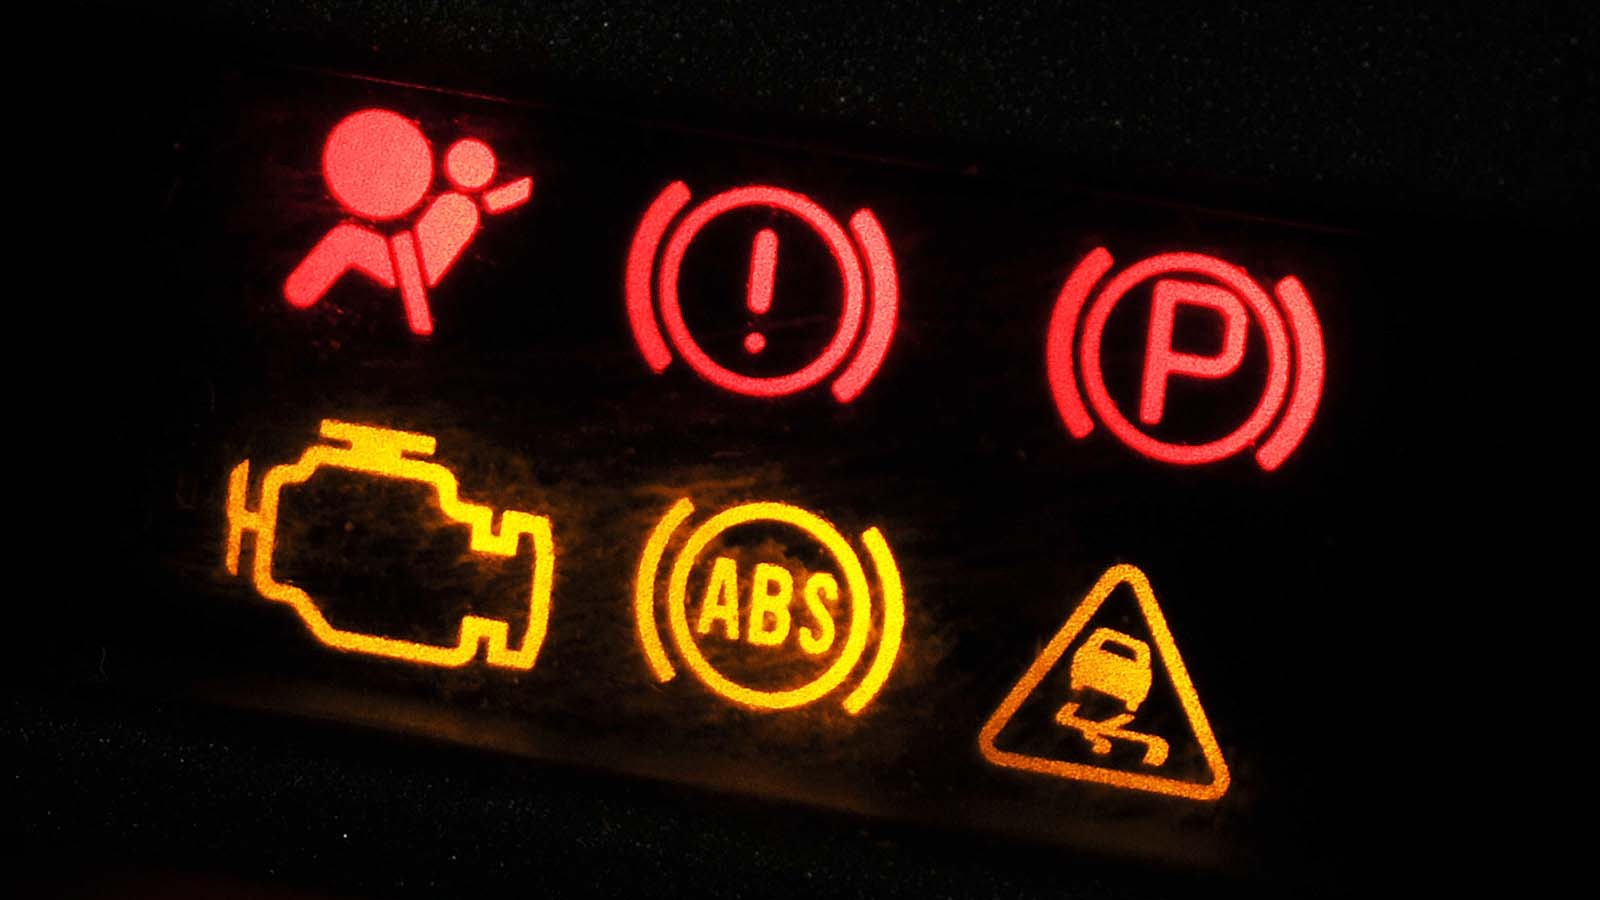 Car warning lights